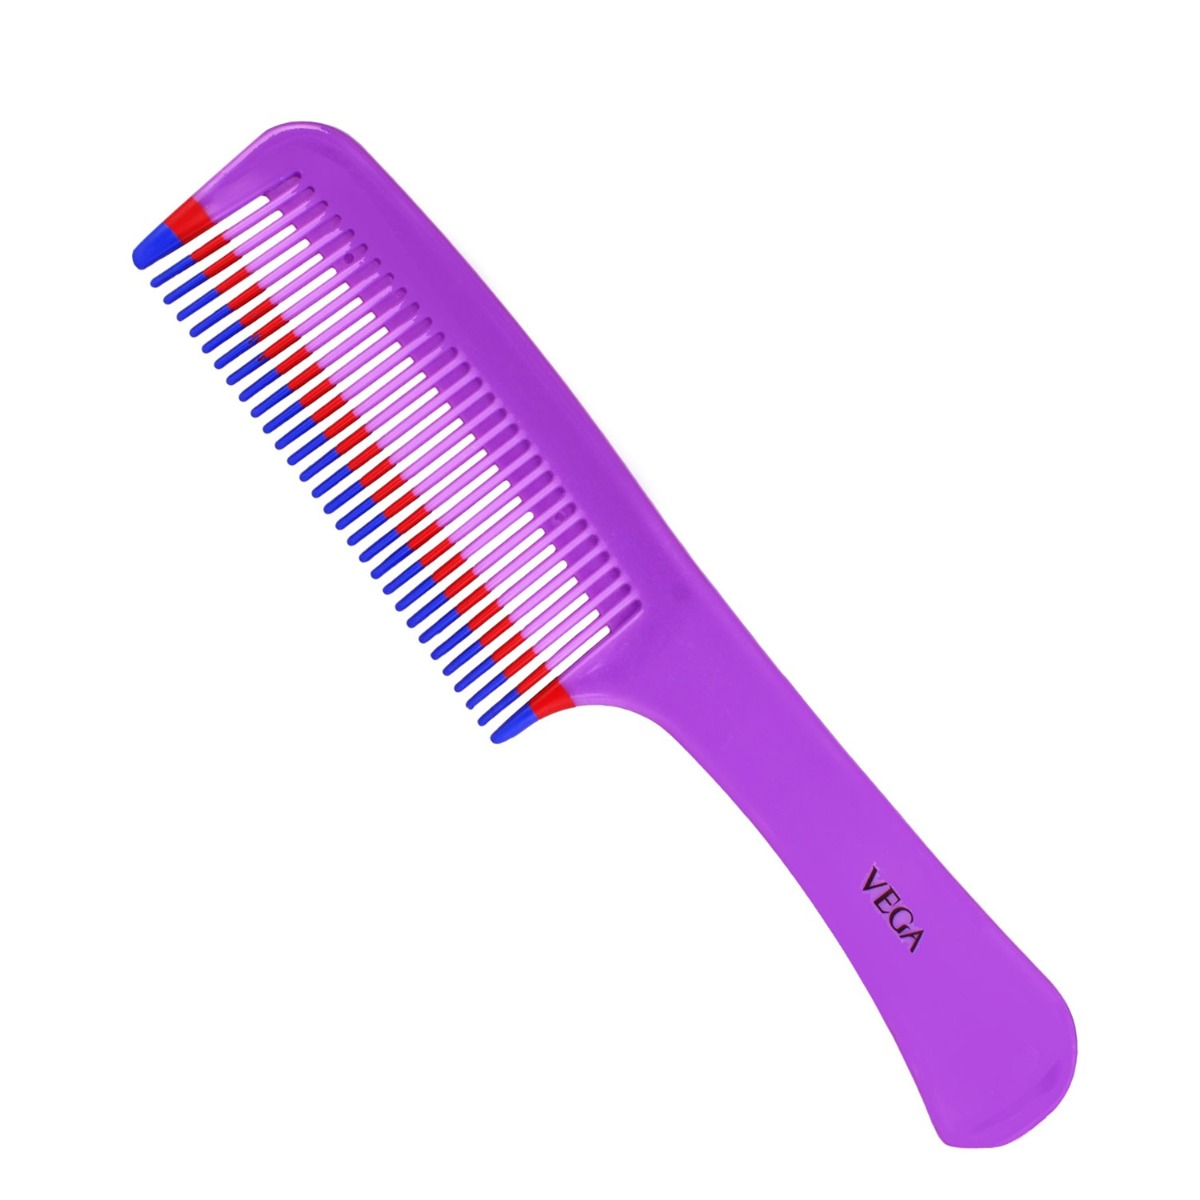 Vega Grooming Comb 1264